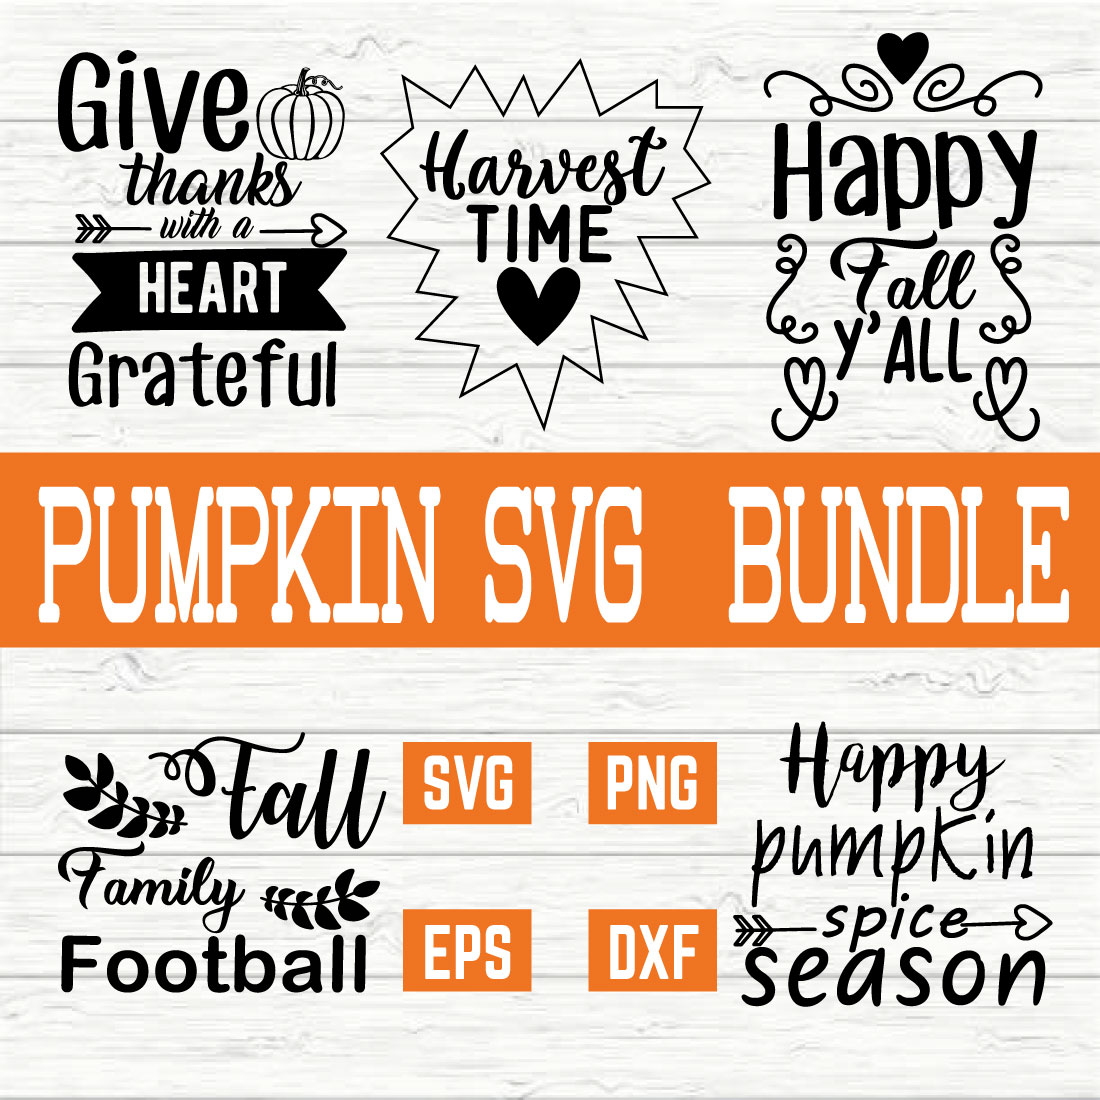 Pumpkin Svg Bundle vol 2 preview image.